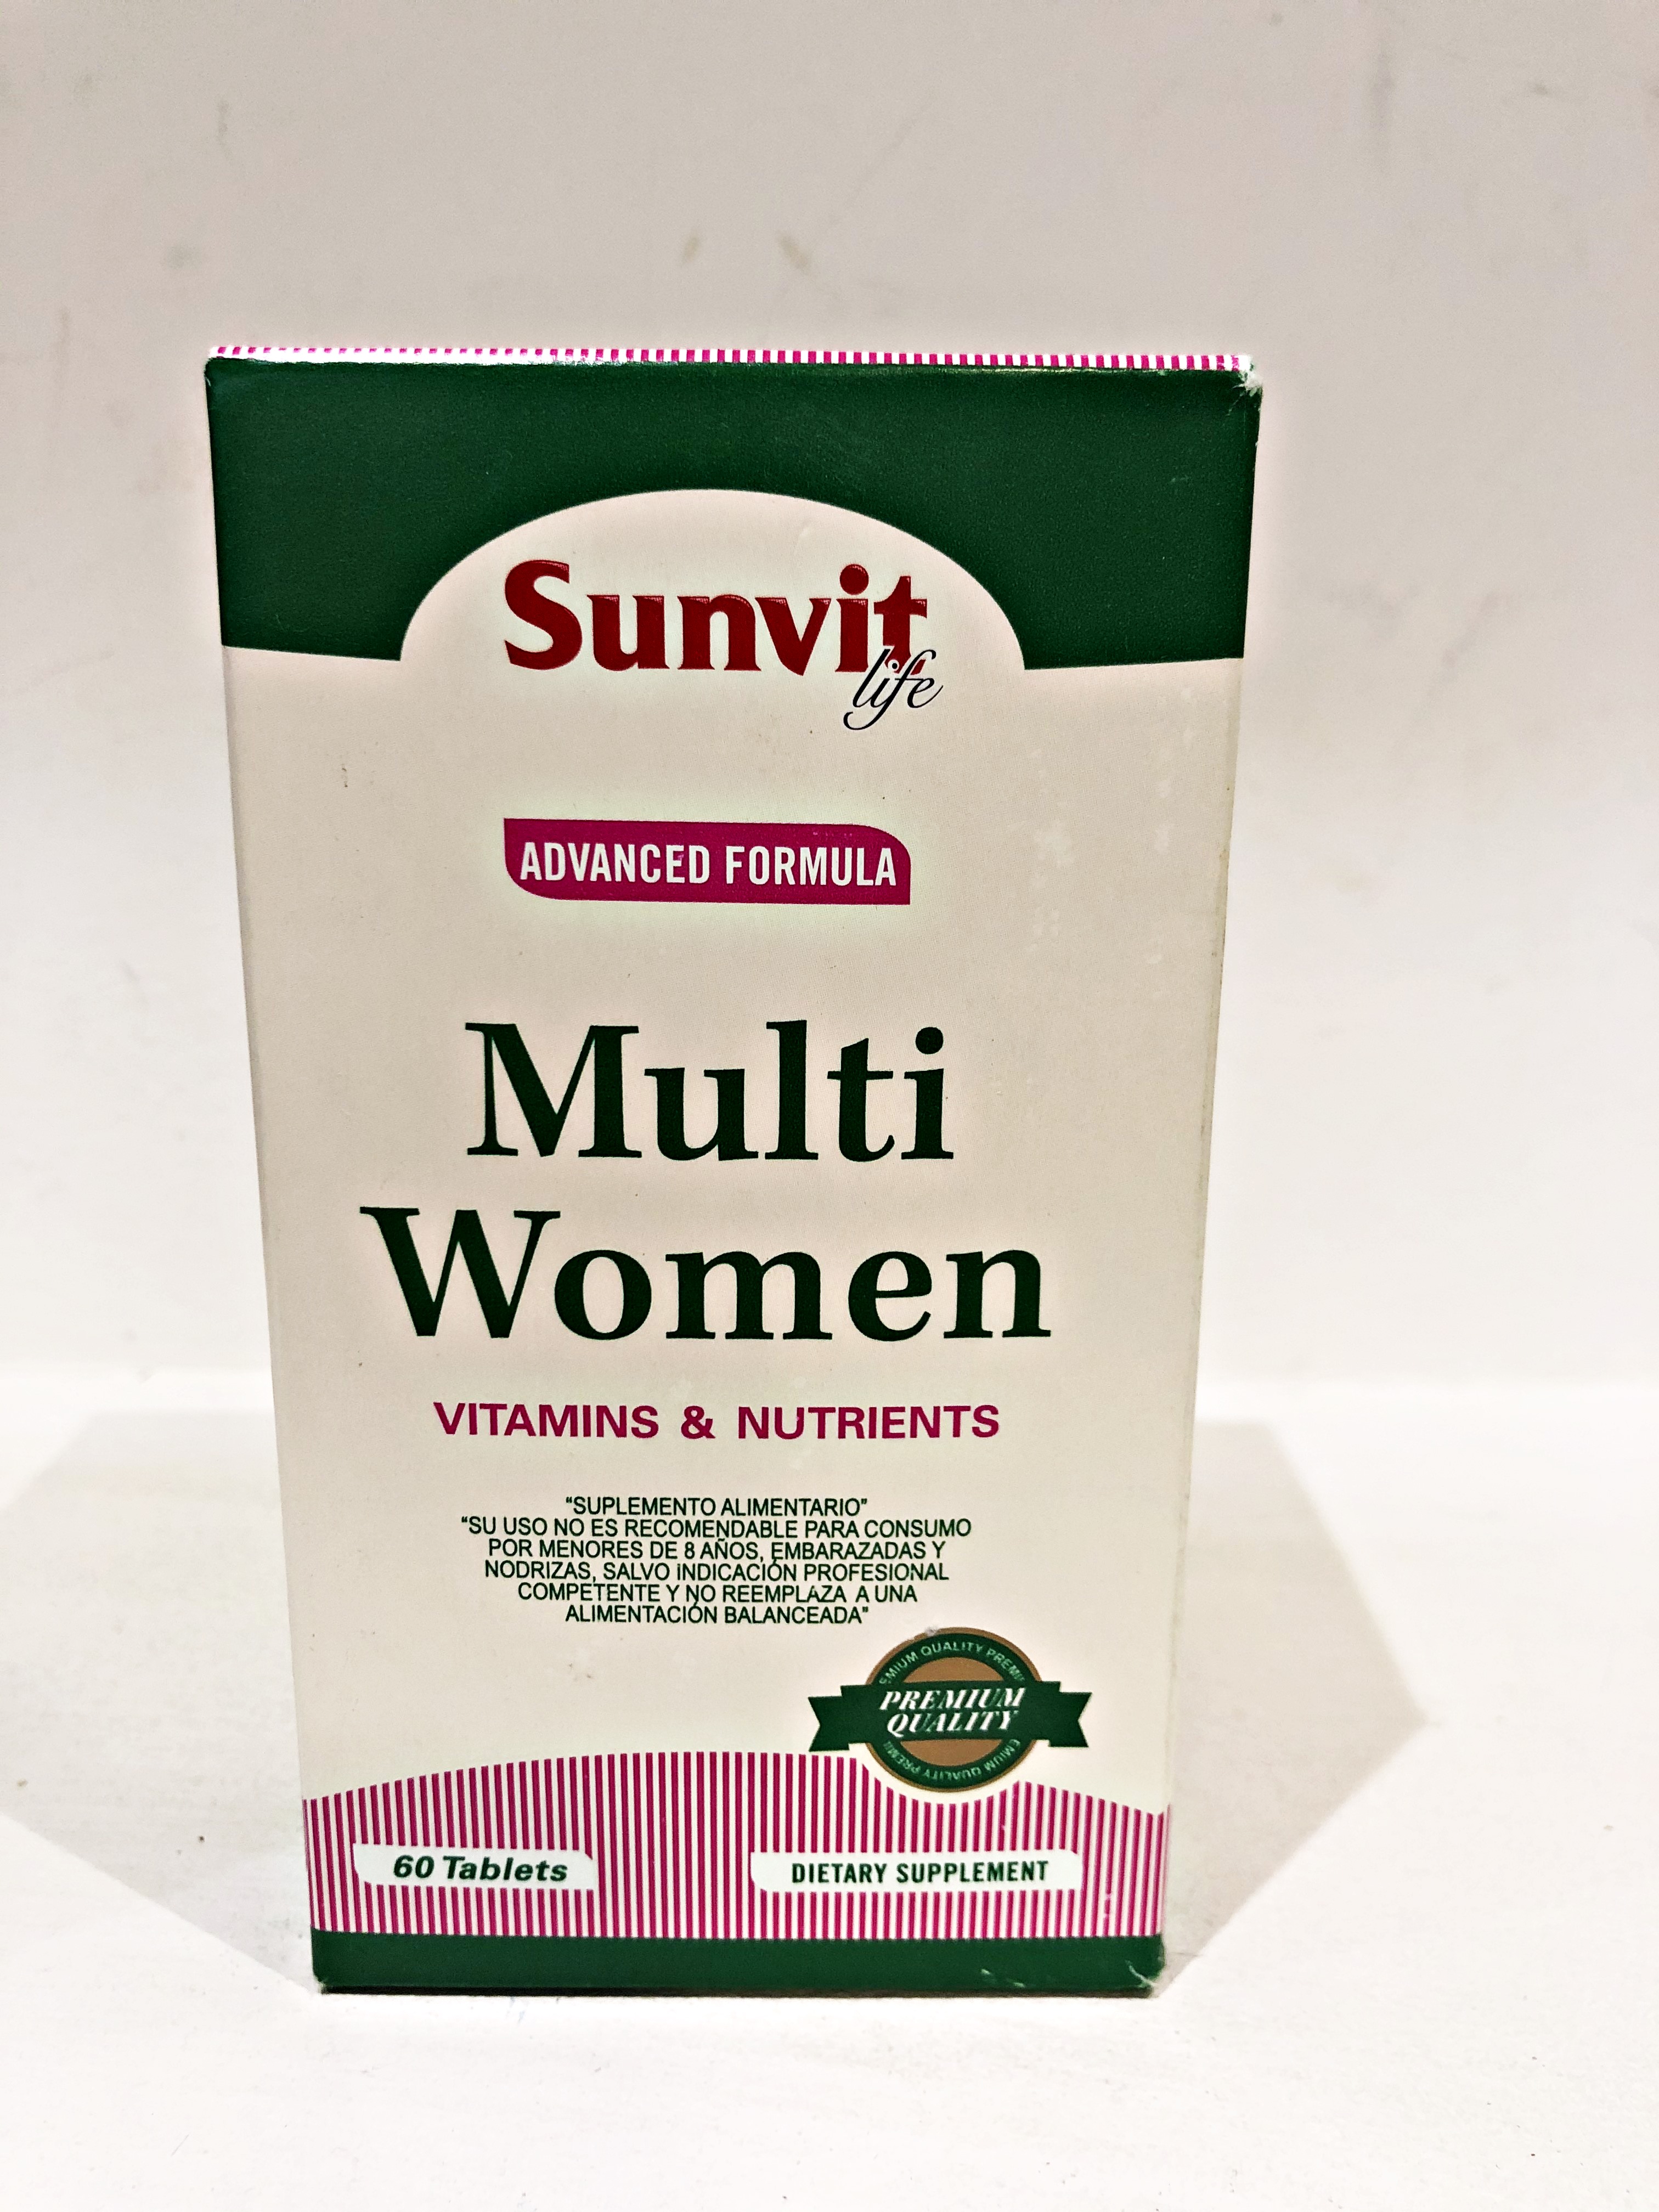 Multi Women Sunvit